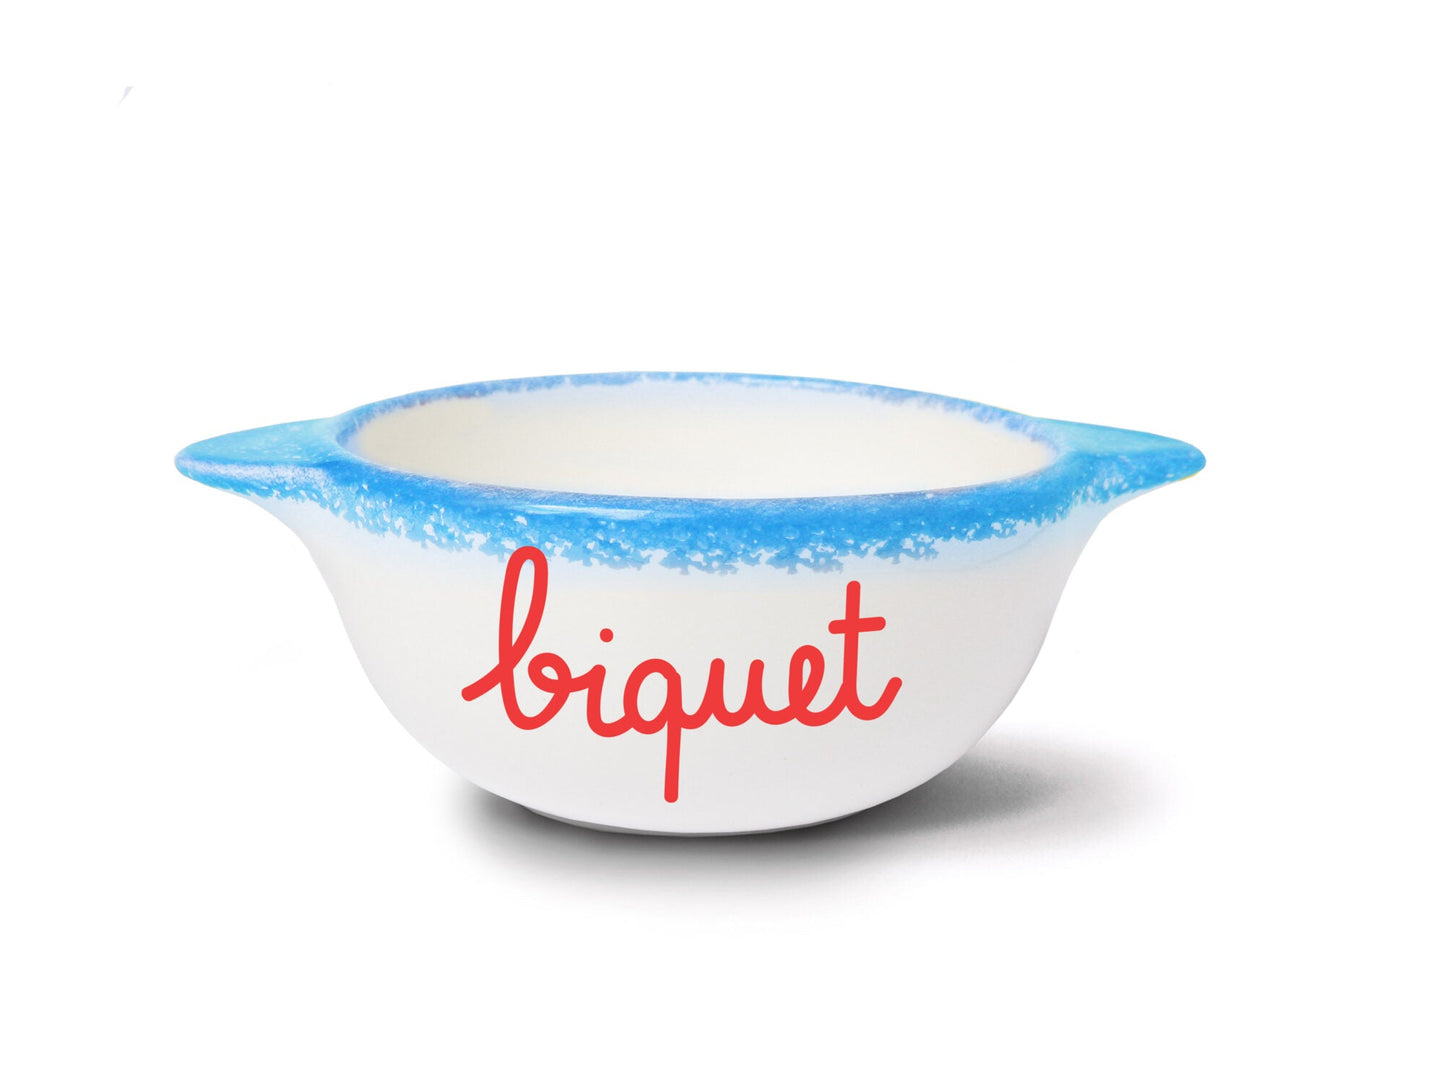 Breton Bowl Biquet